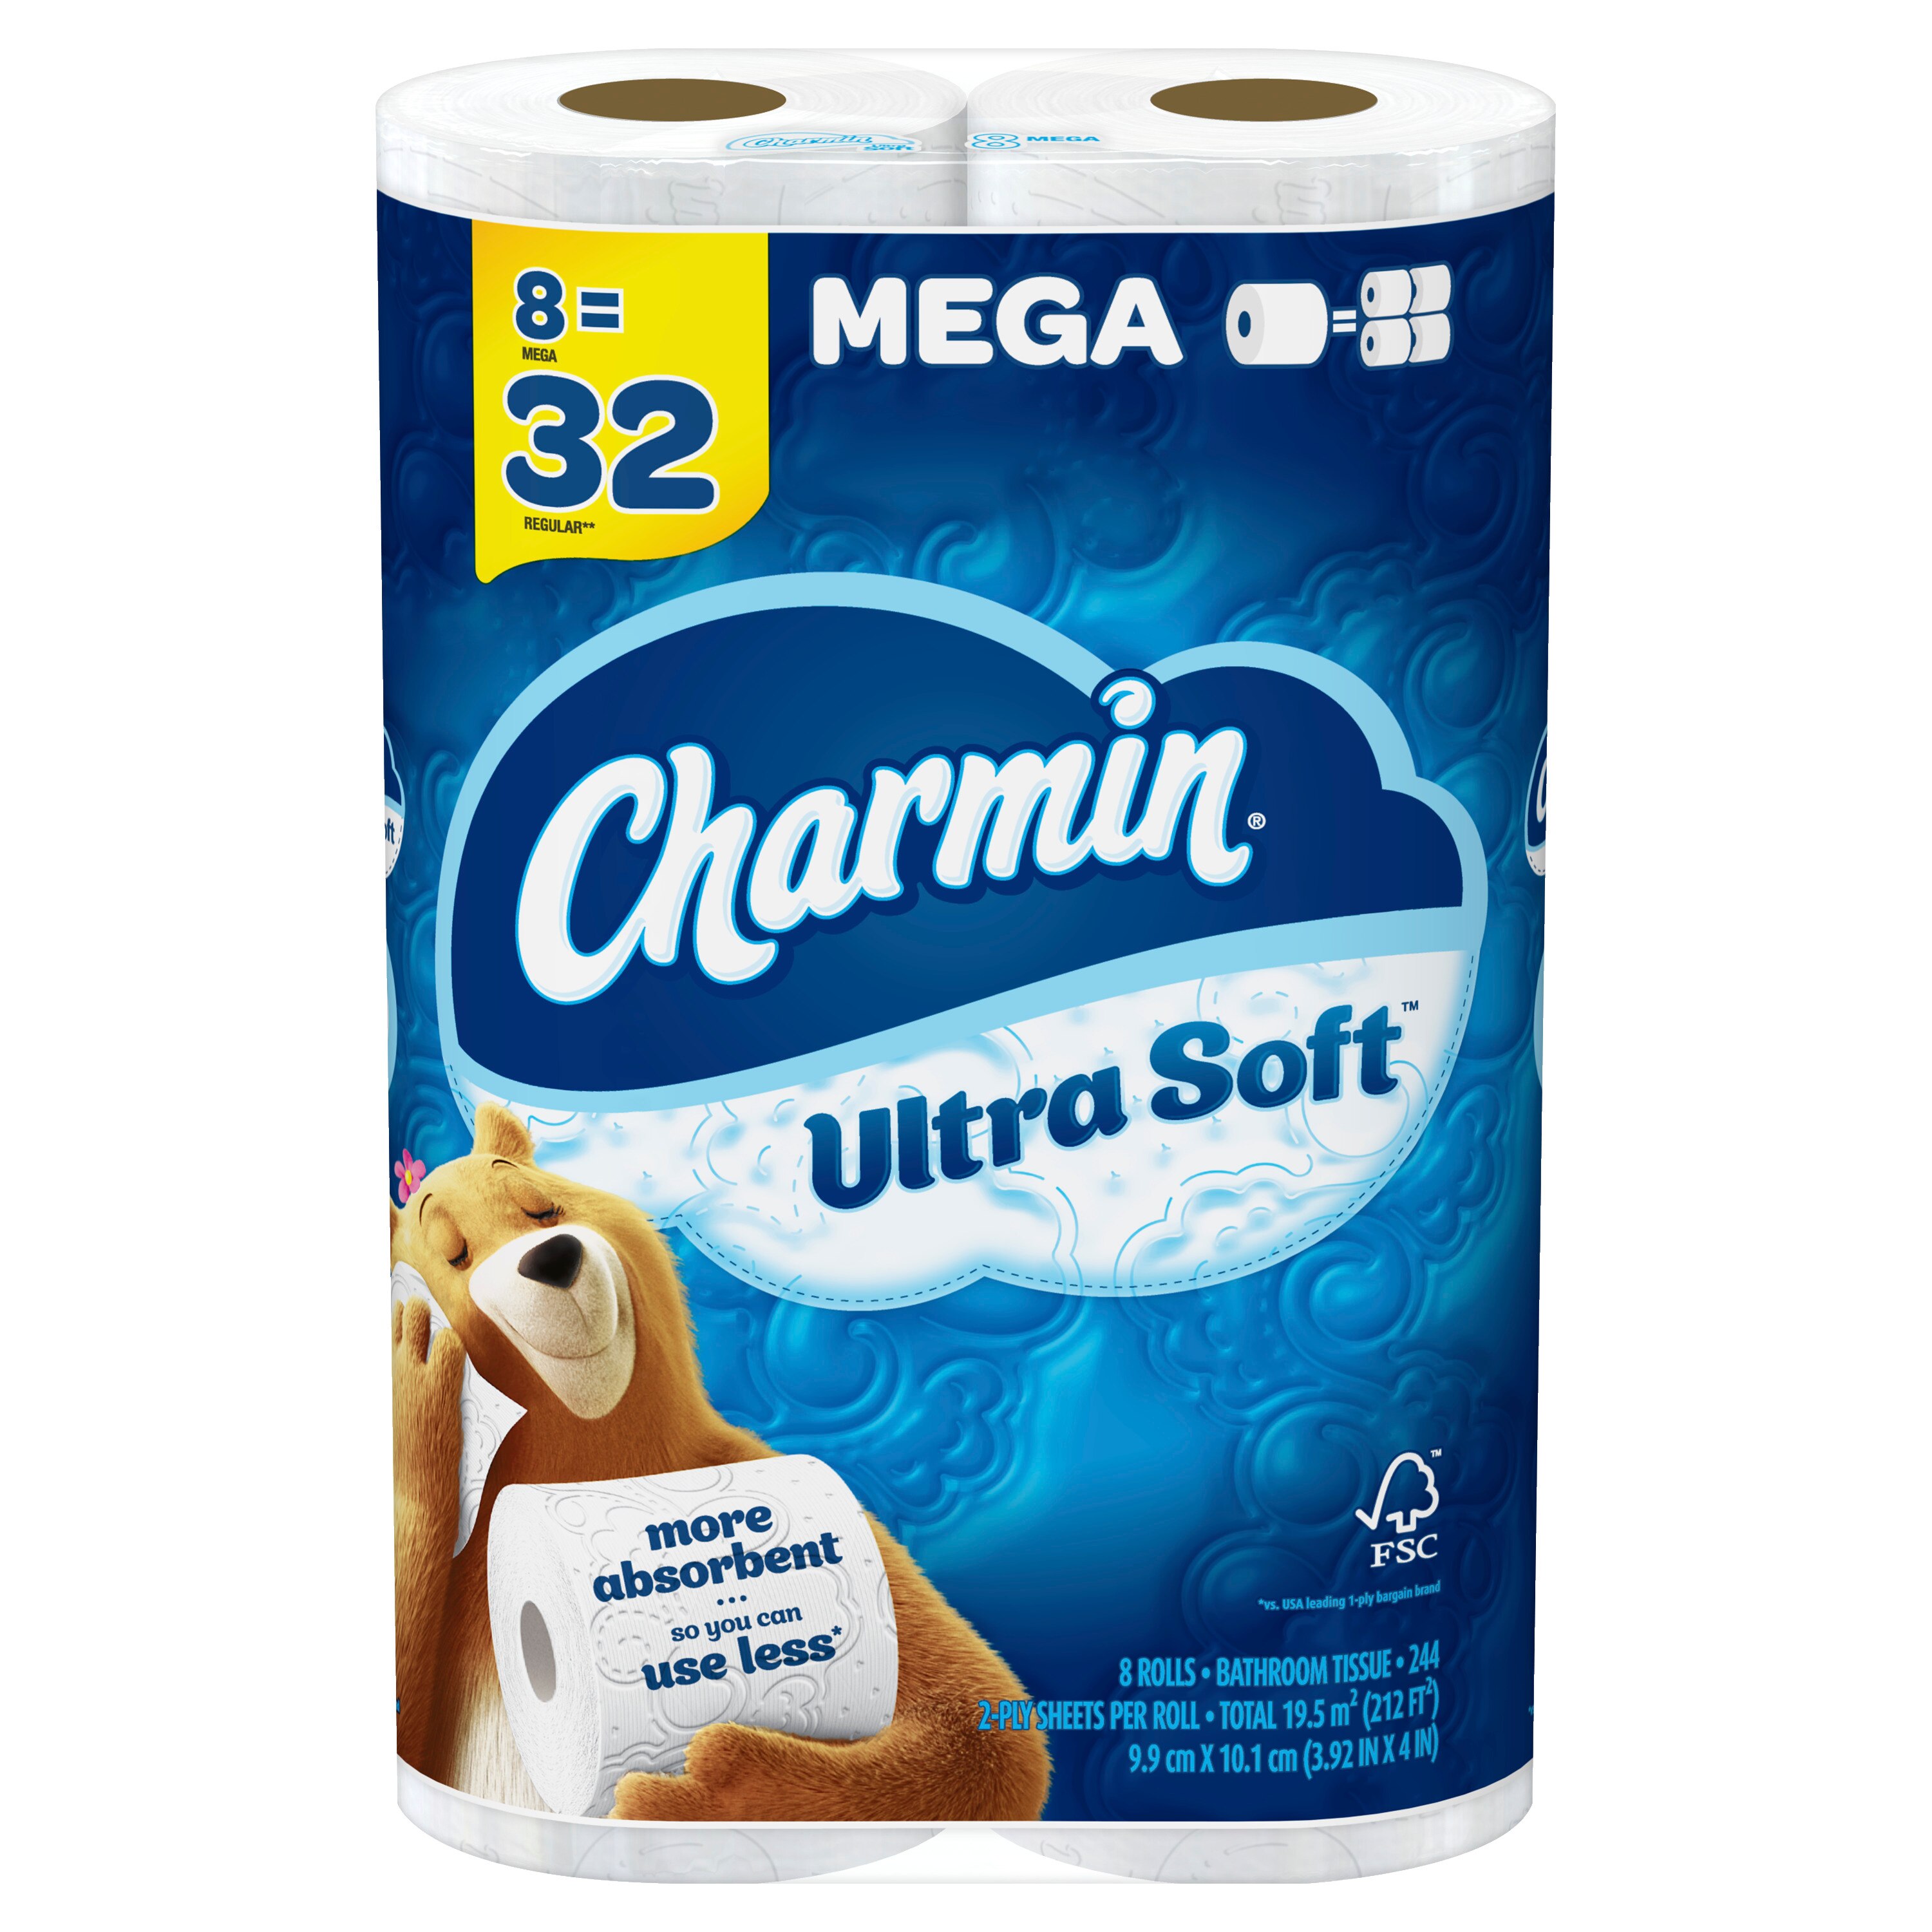 Charmin Ultra Soft Toilet Paper 8 Mega Rolls, 224 Sheets Per Roll